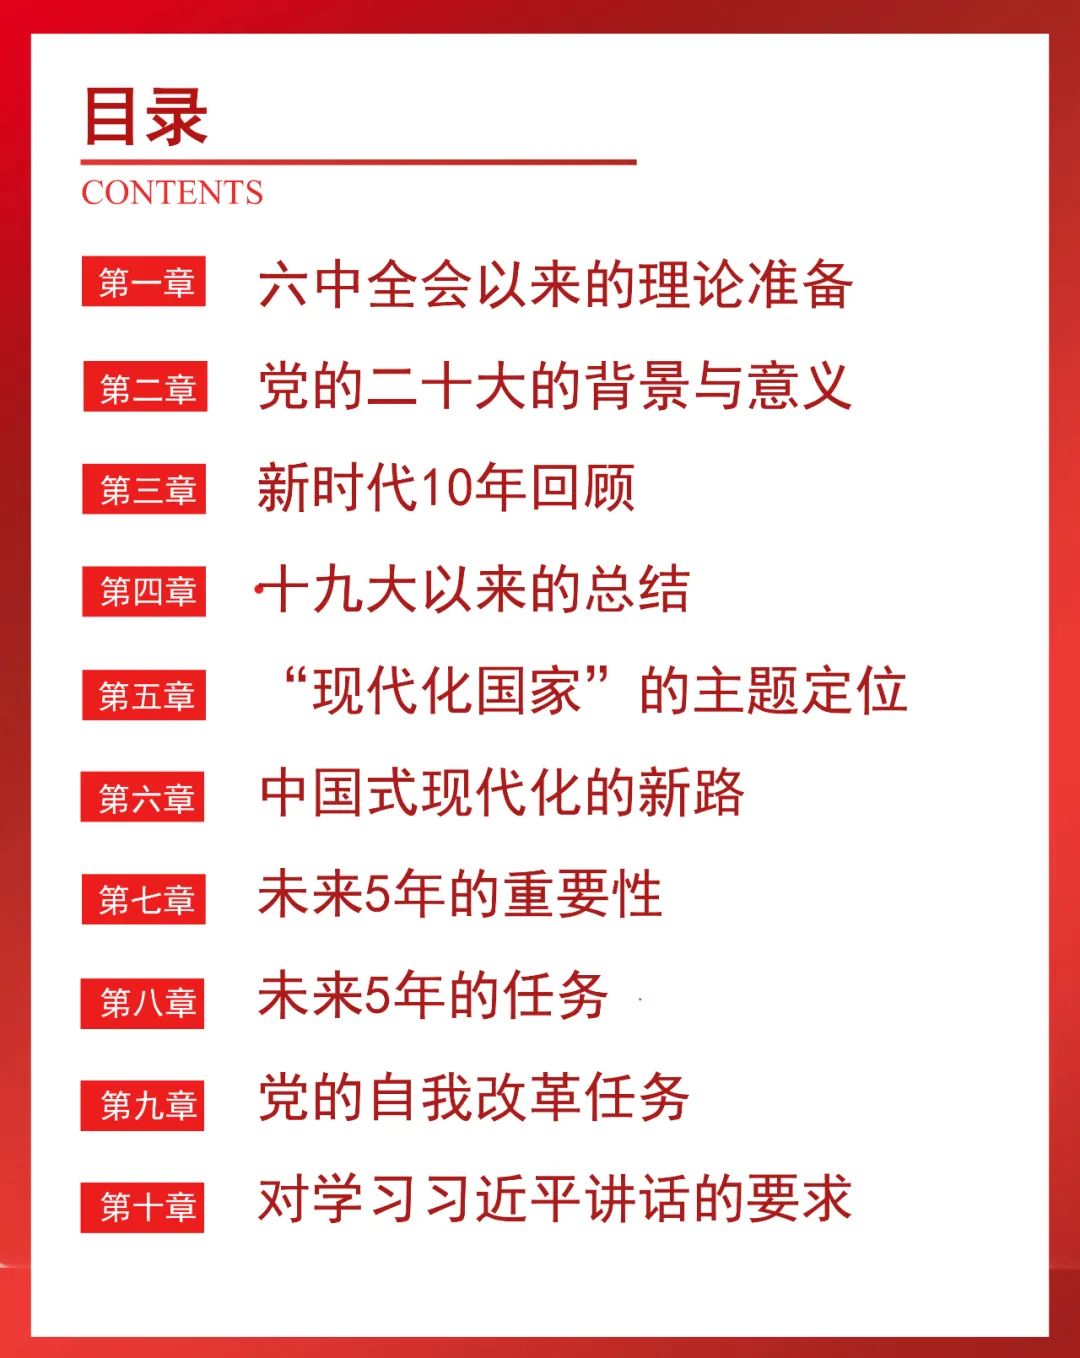 【李想集锦】（101）丨星团式管理法是新时代中国国企治理的重大创新